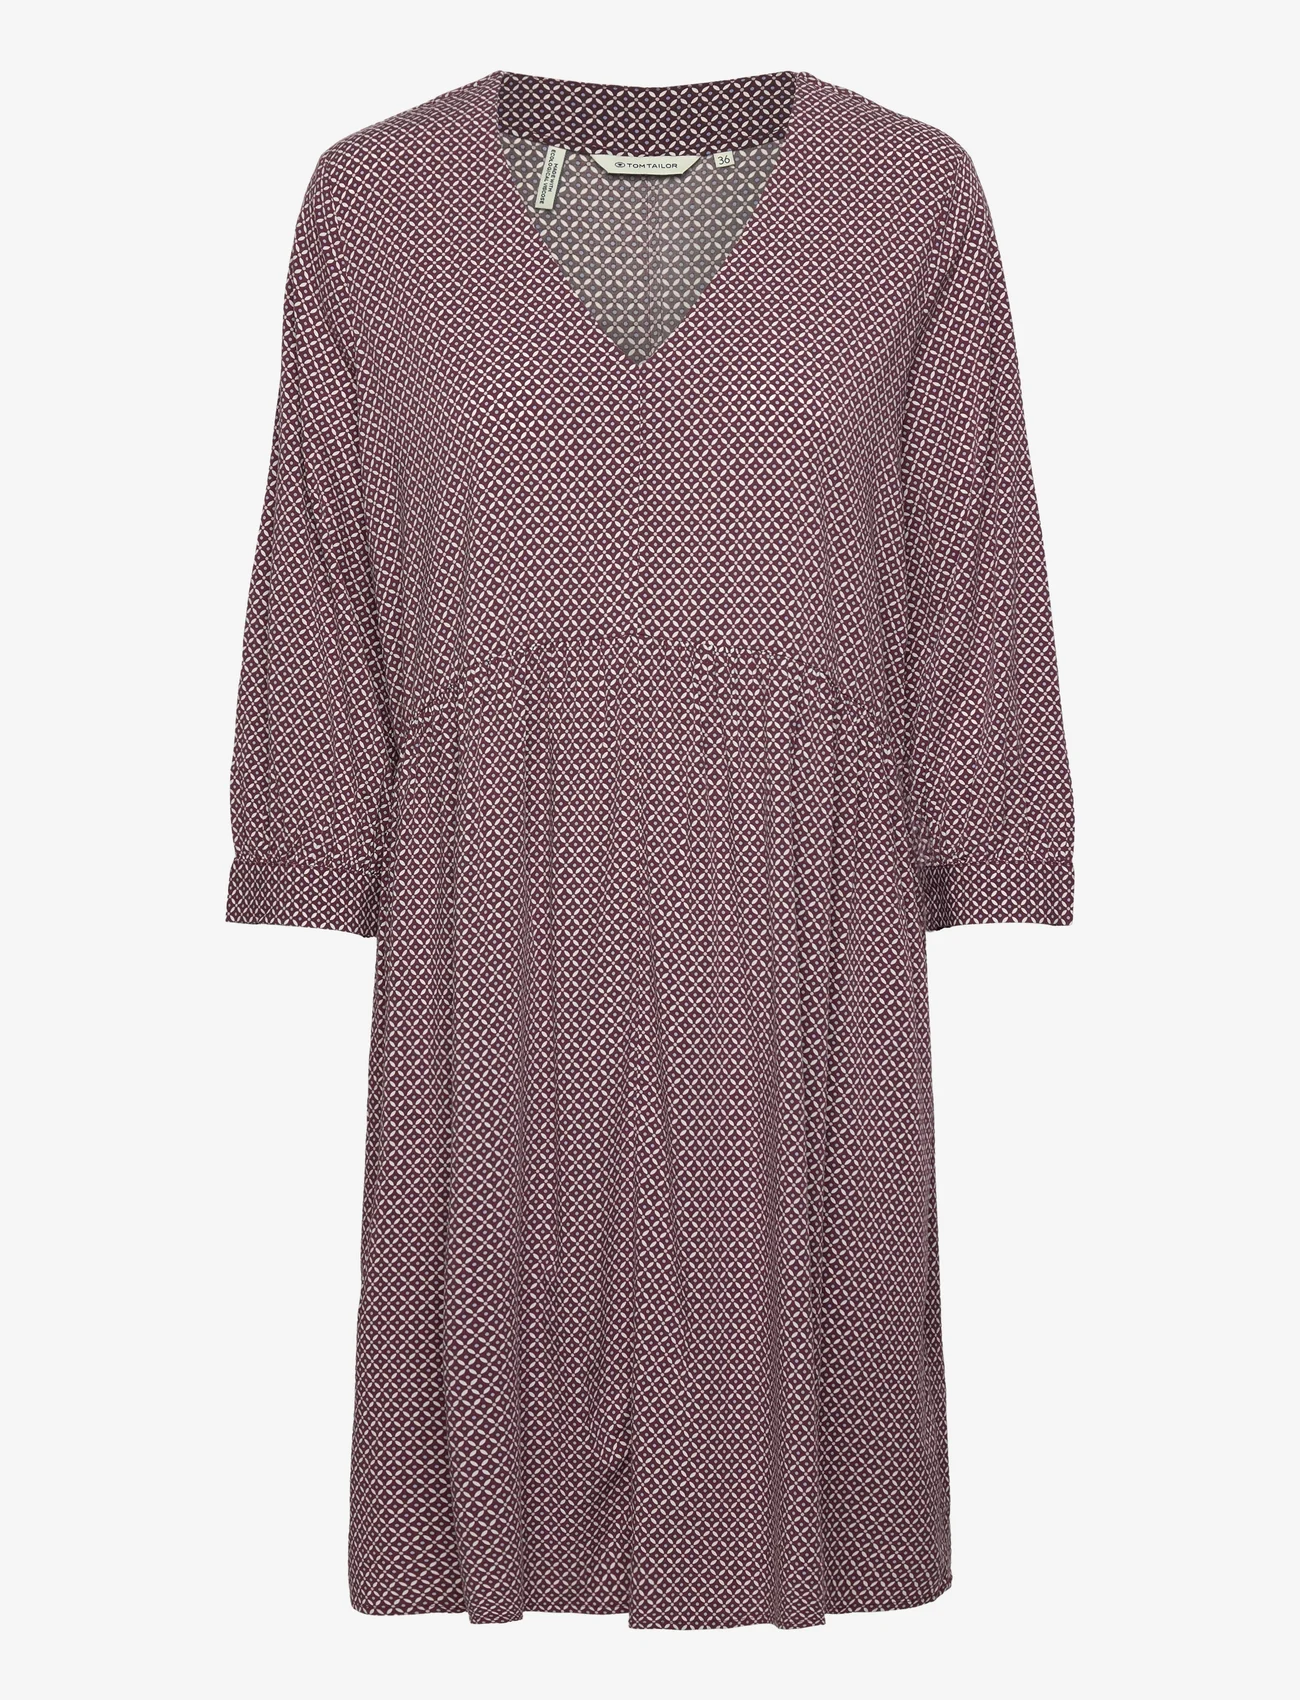 Tom Tailor - feminine v-neck dress - summer dresses - burgundy geometrical design - 0